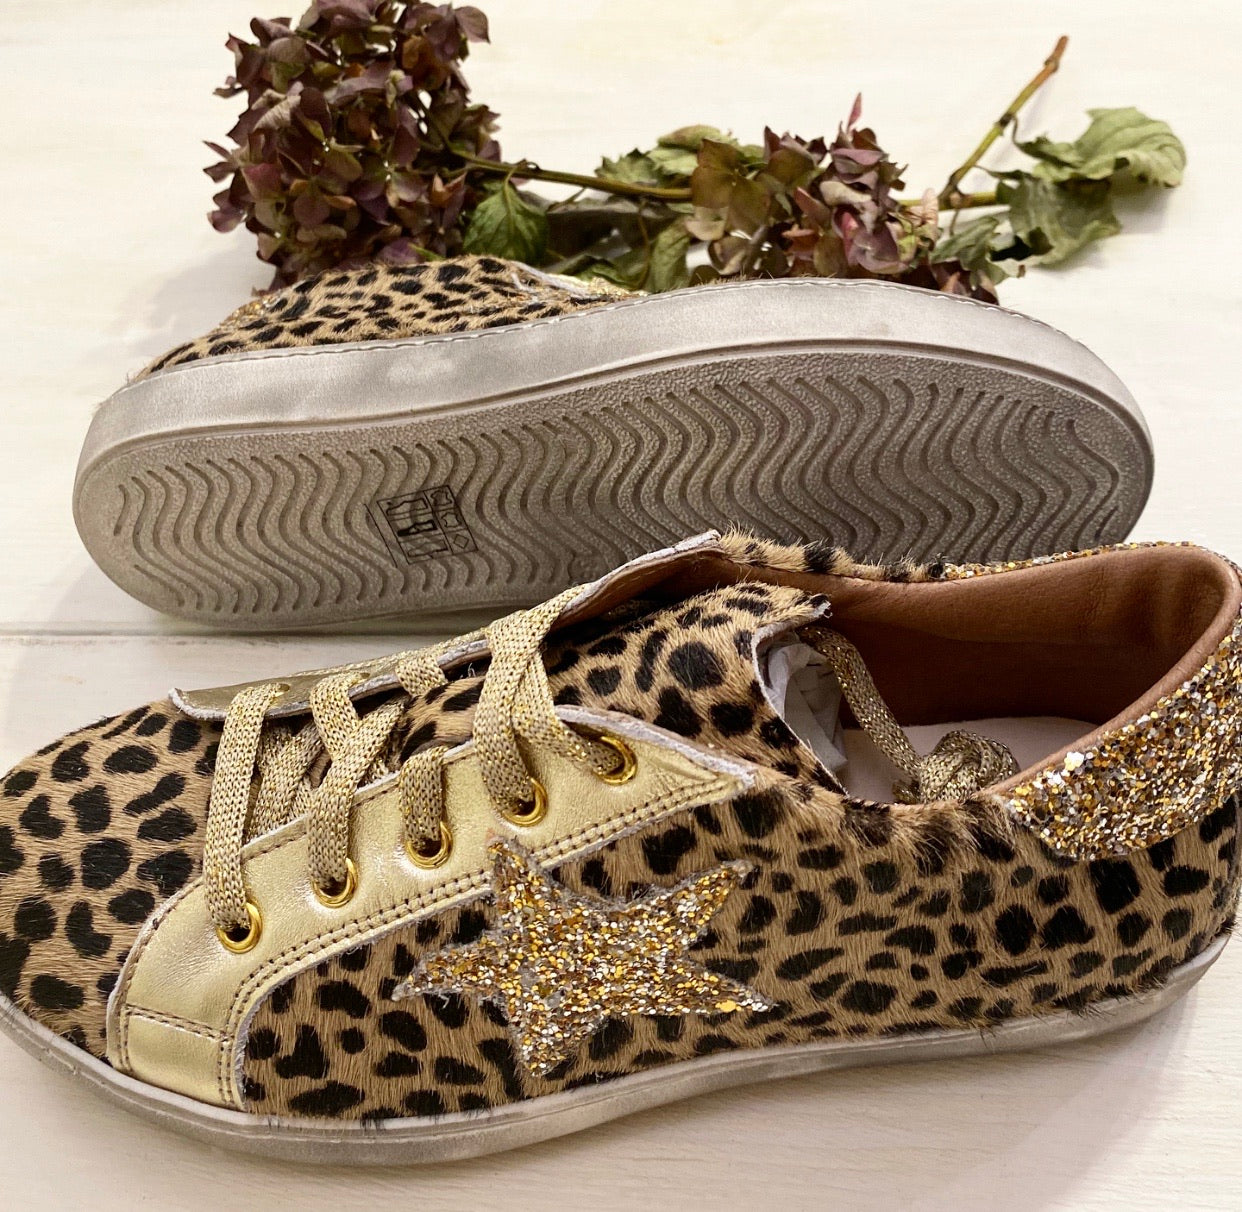 Bellissime sneakers in pelle leopardate colore cappuccino con applicazioni glitter platino, doppi lacci oro o marrone cioccolato.